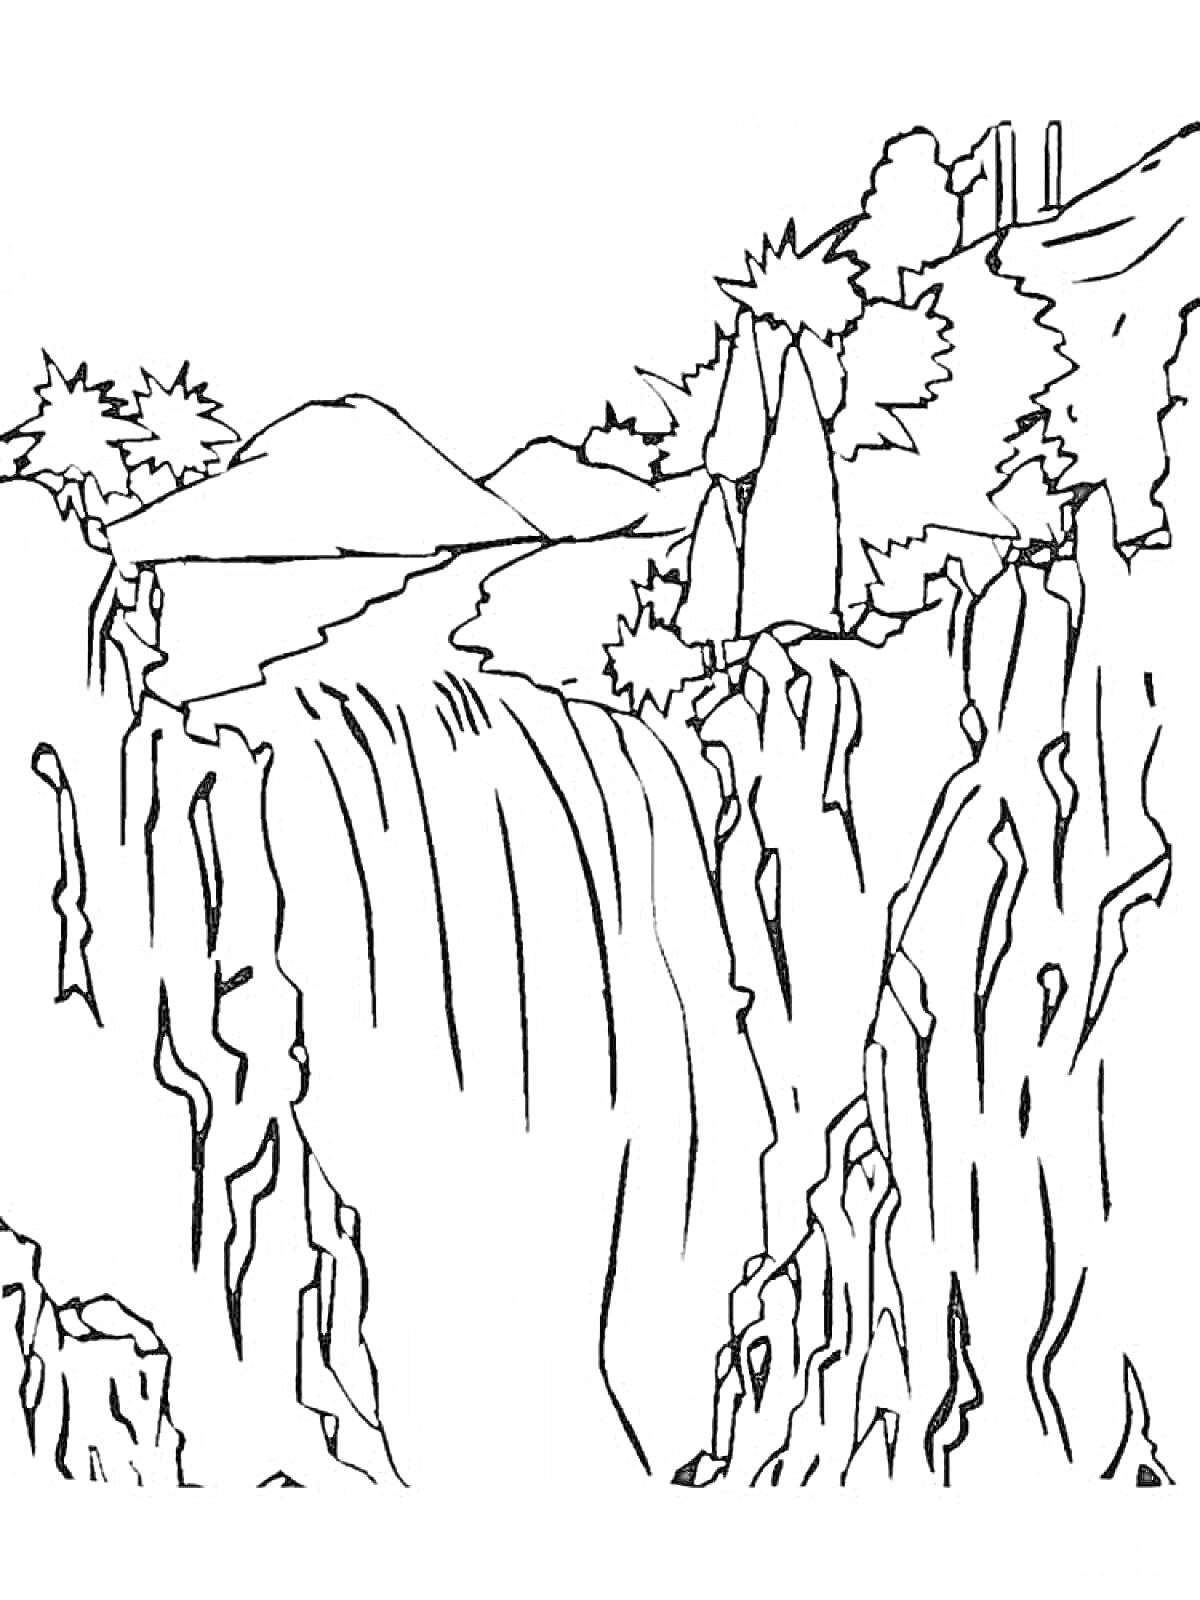 Водопад с деревьями и кустарниками на возвышенности